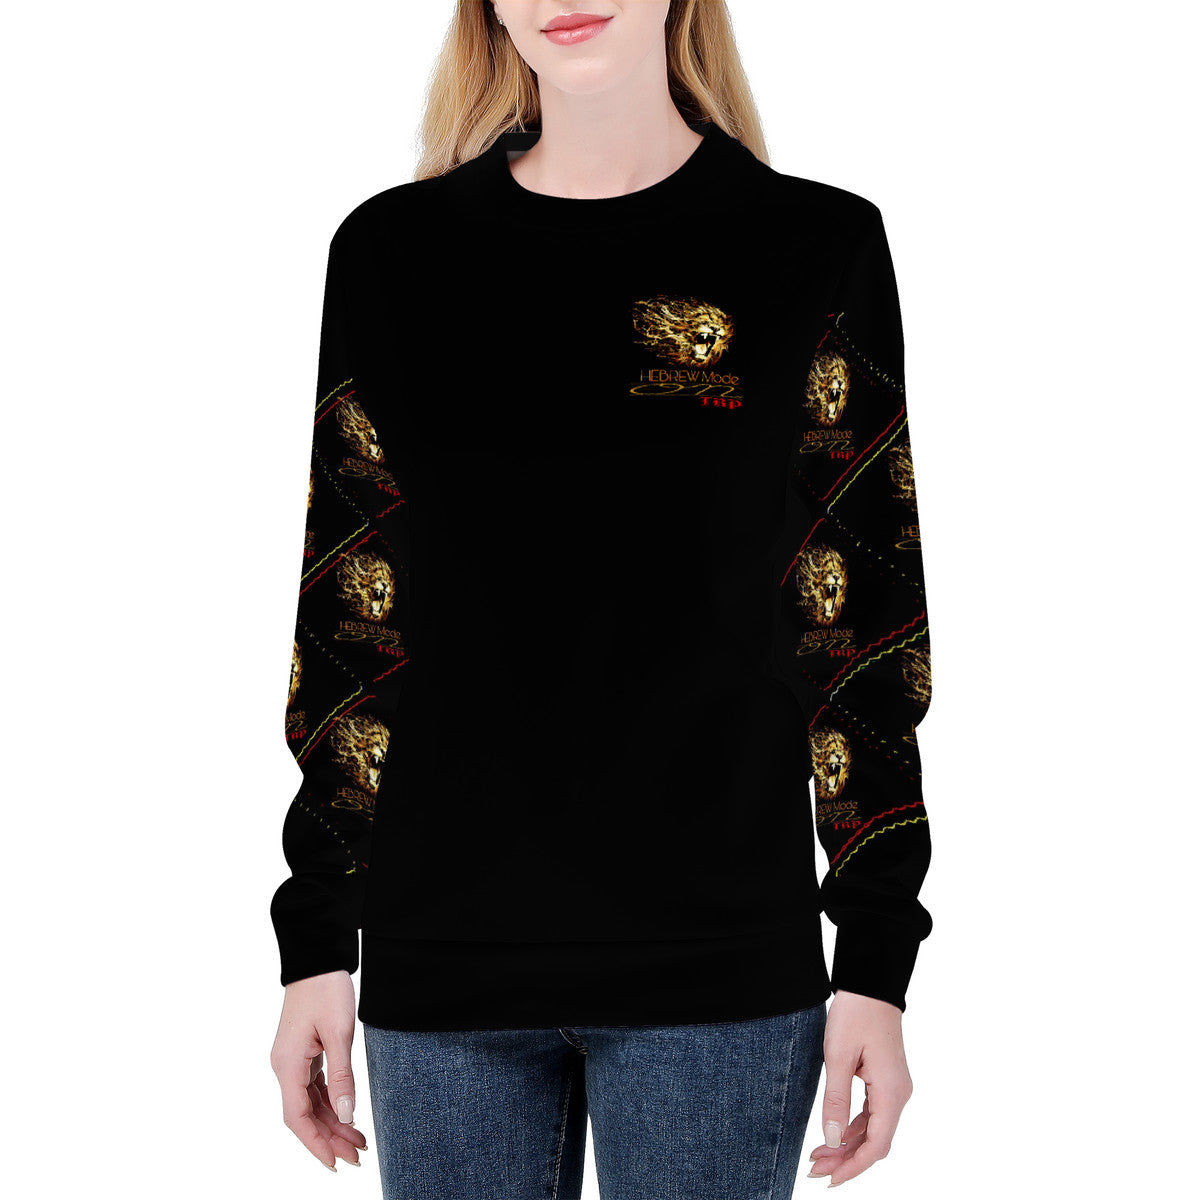 Hebrew Mode - On 02 Ladies Designer Sweatshirt